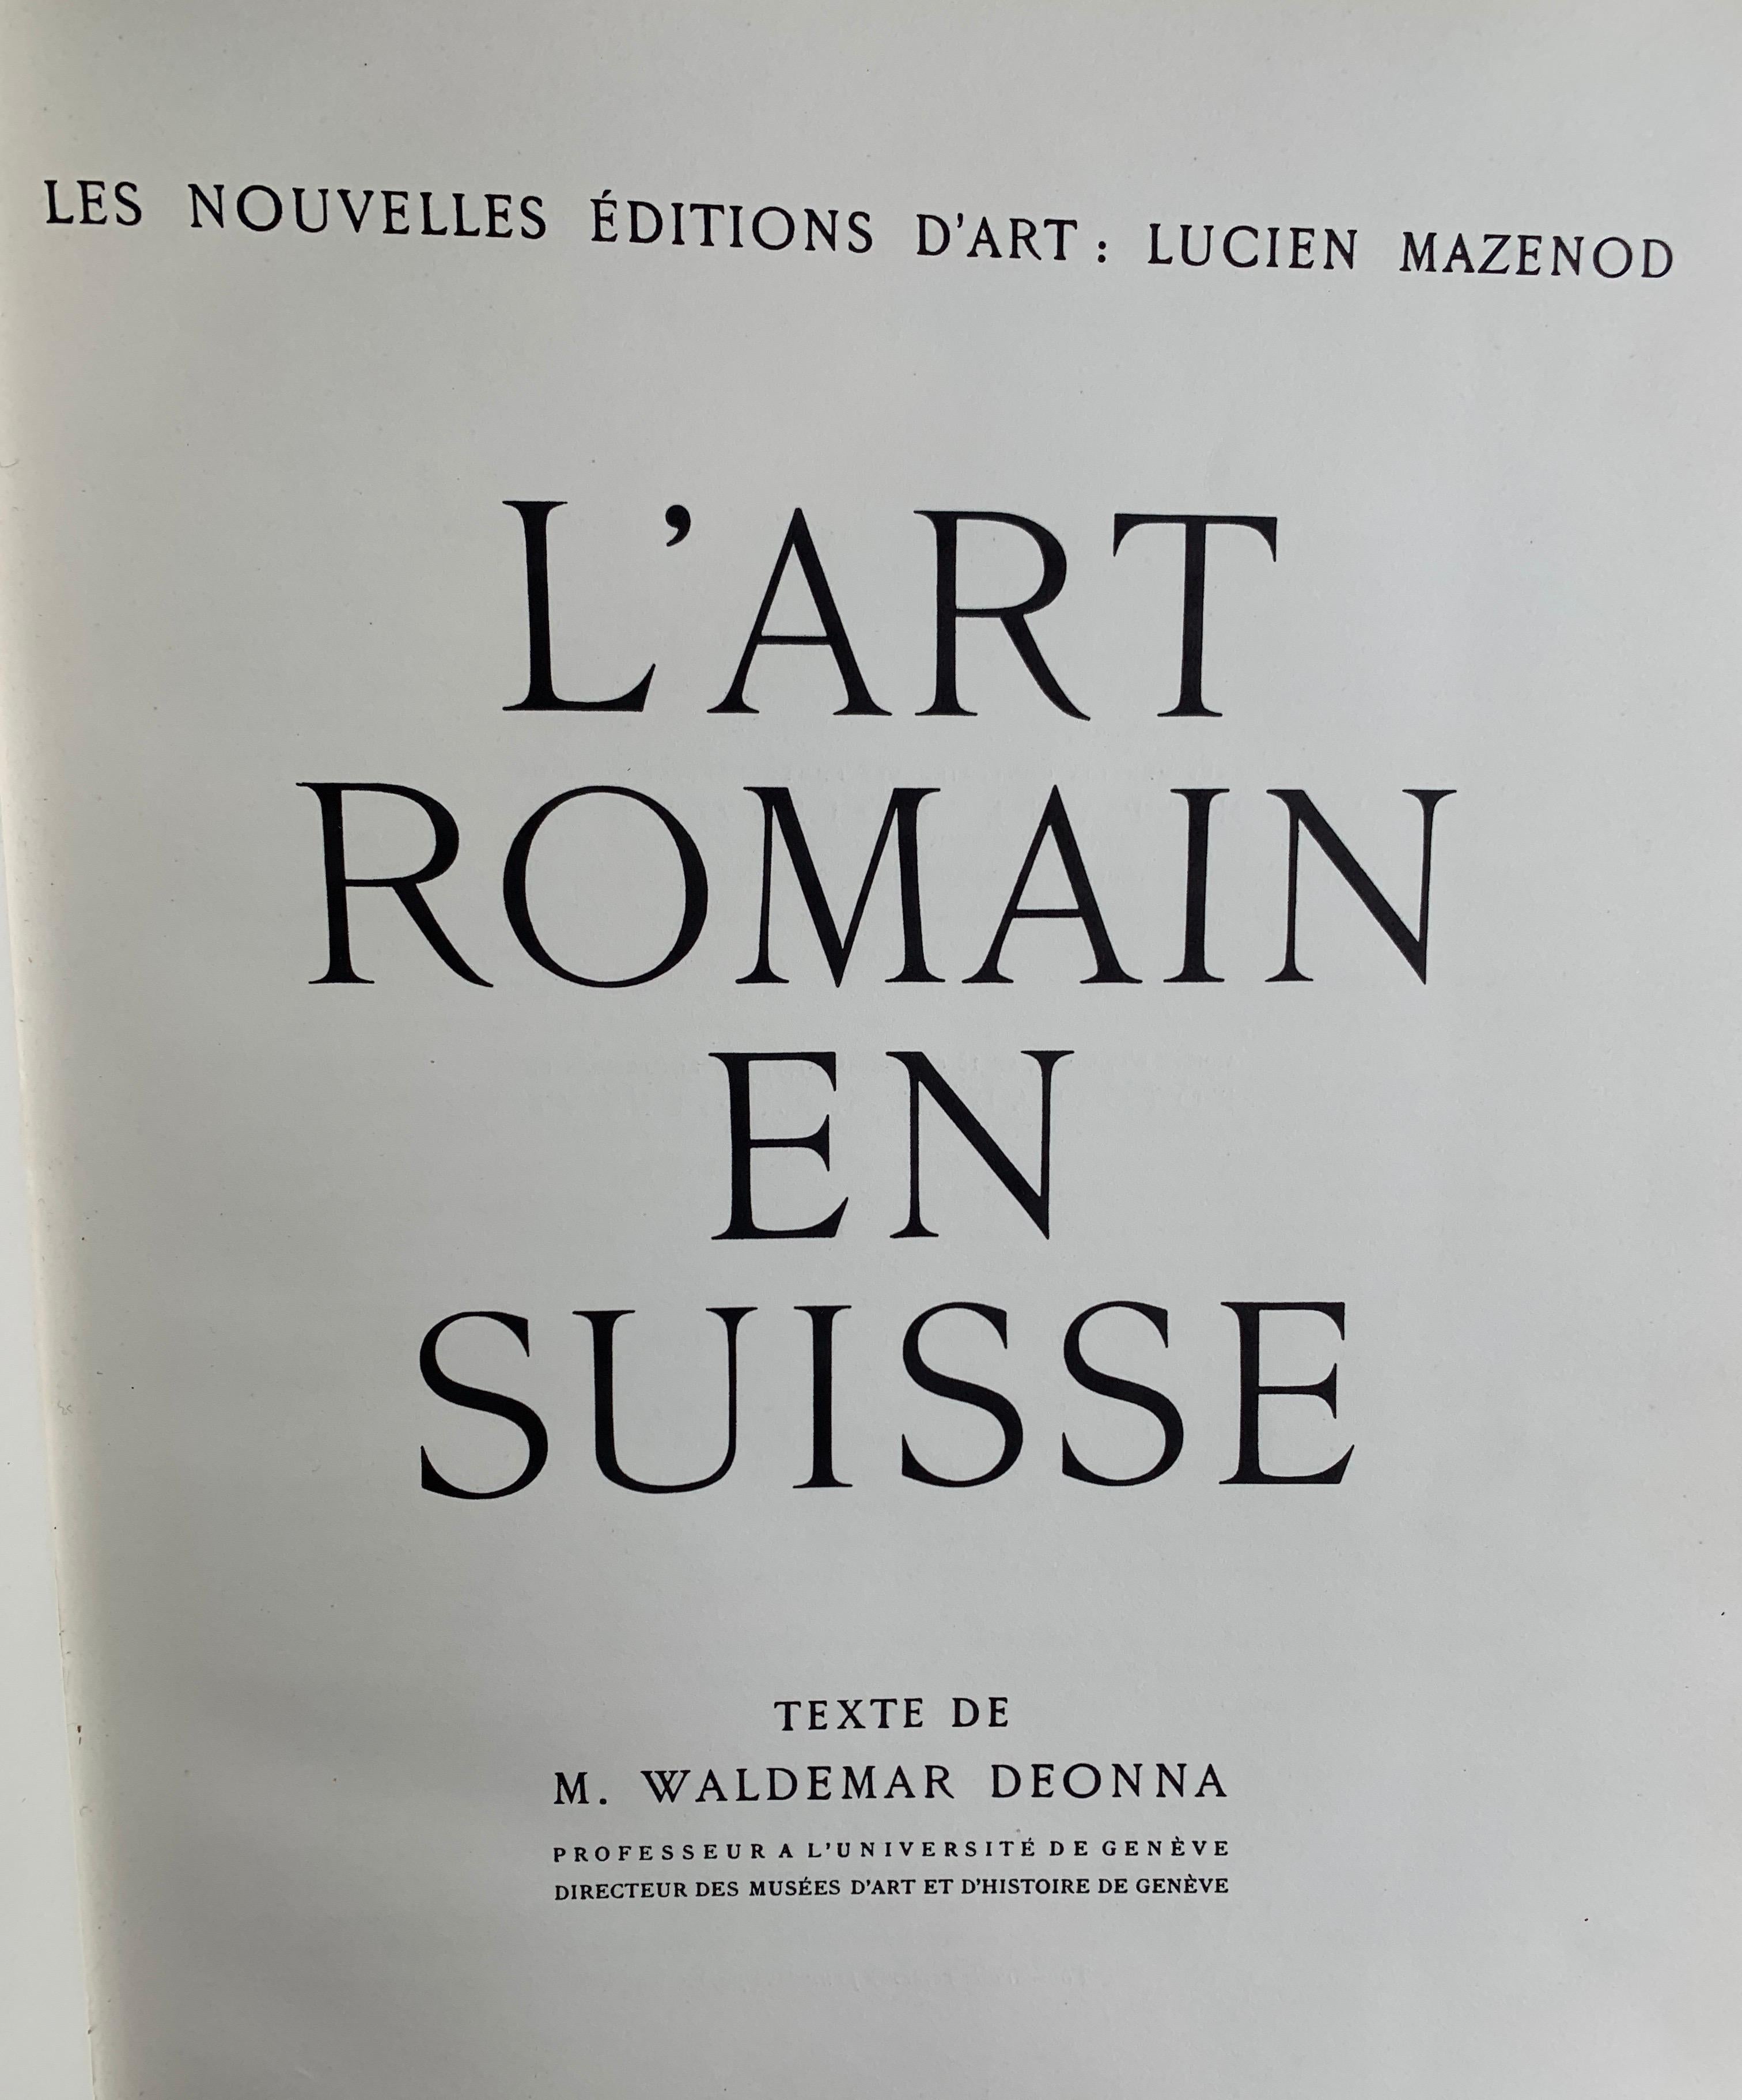 Romantic L'Art Primitif En Suisse, Roman and Gothique, Lucien Mazenod, 1948